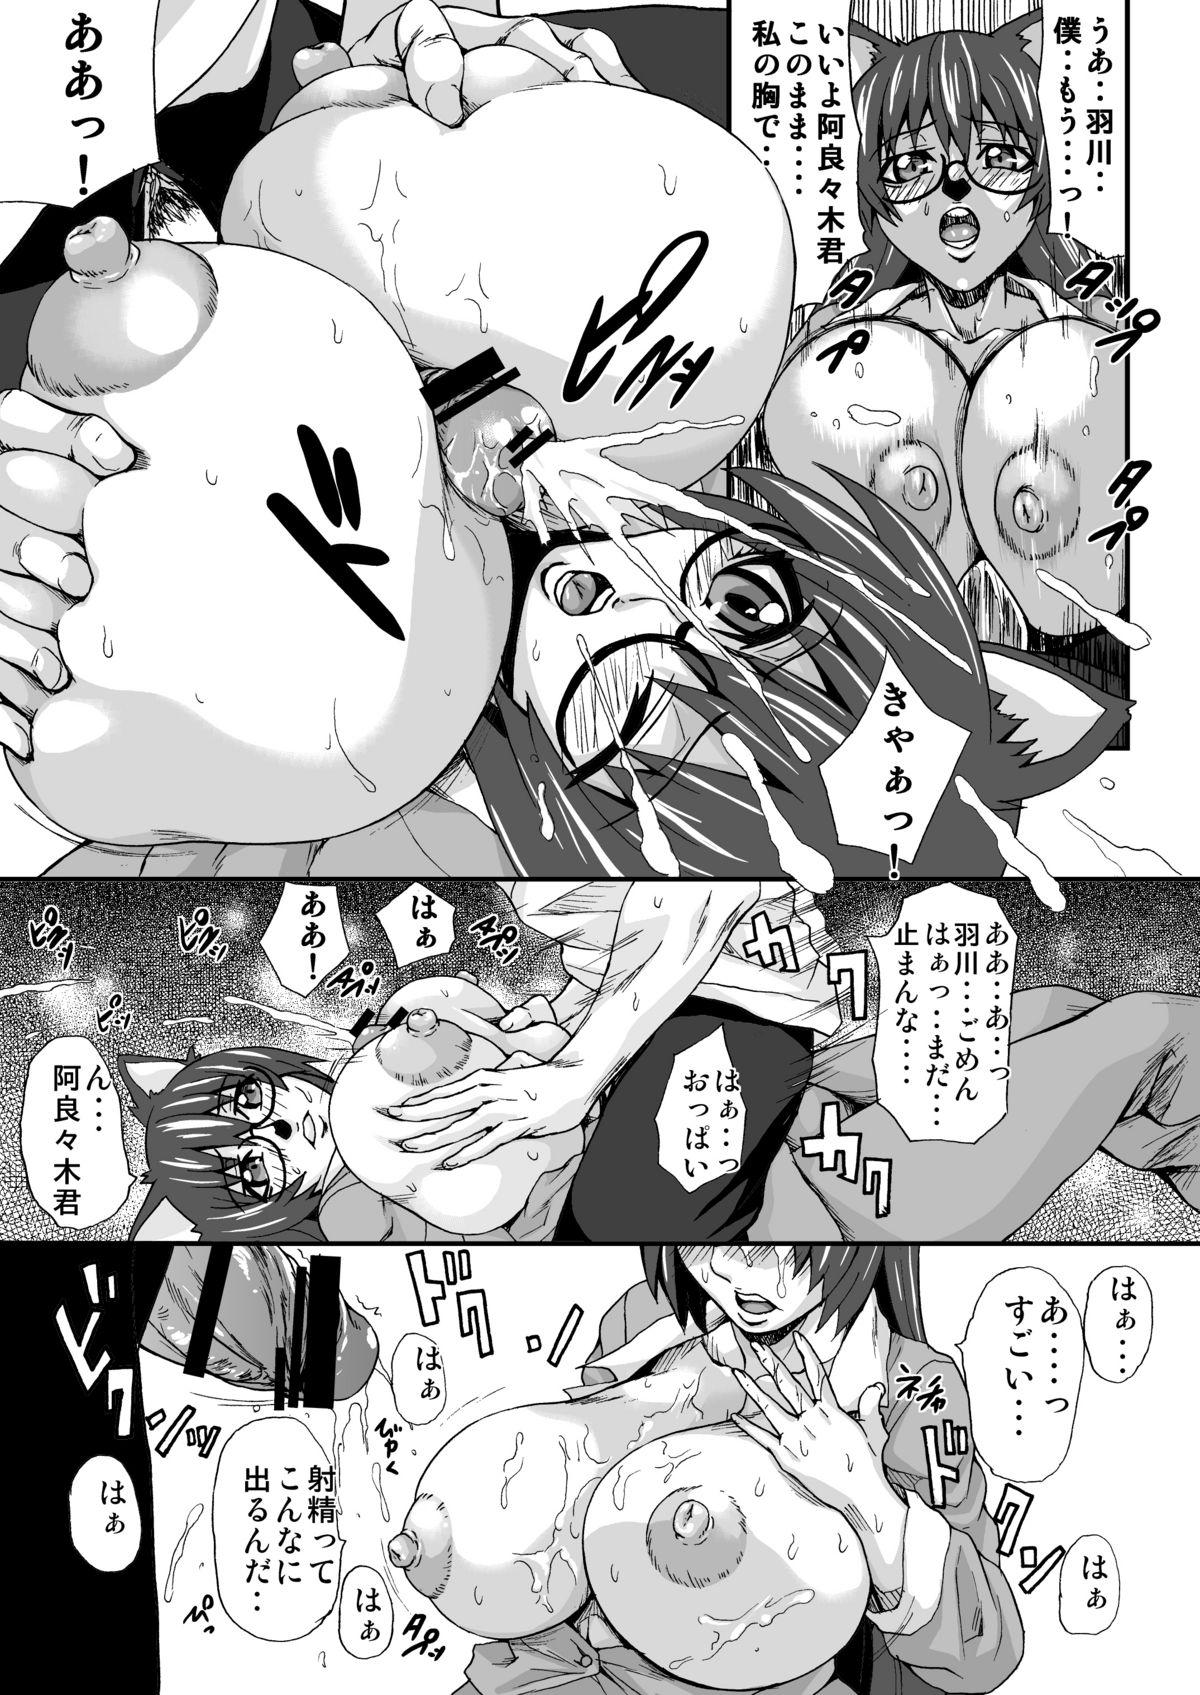 Pasivo Hanekawa-san no Nyuu Doujinshi - Bakemonogatari Flashing - Page 8